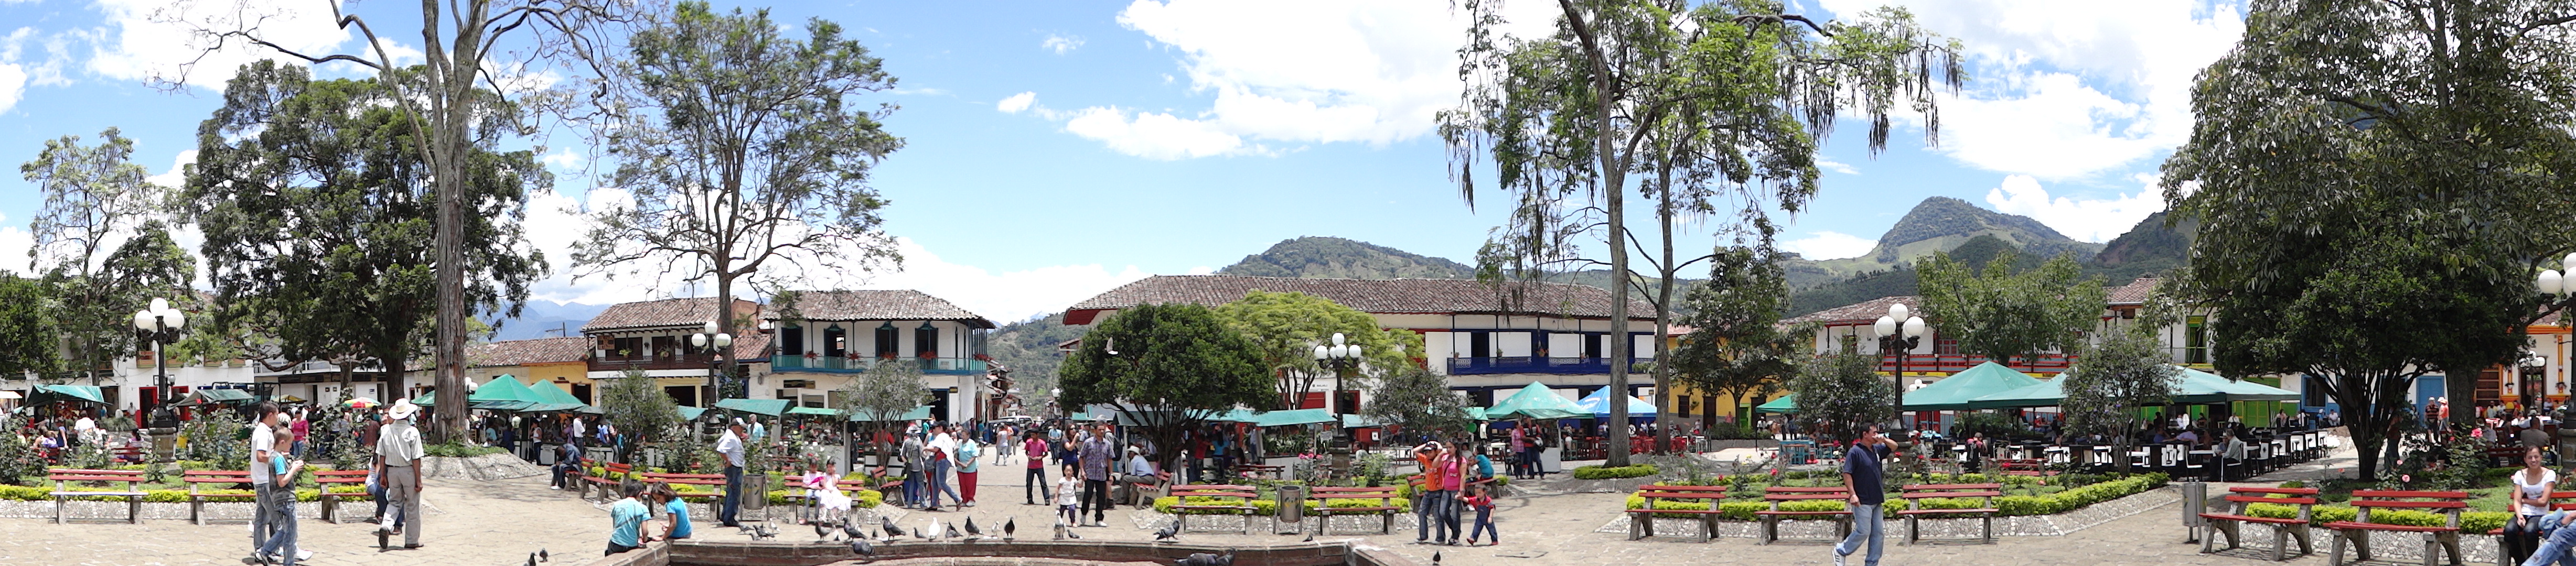 Conjunto de la Plaza Principal del Municipio el Jardín. Colombia.JPG